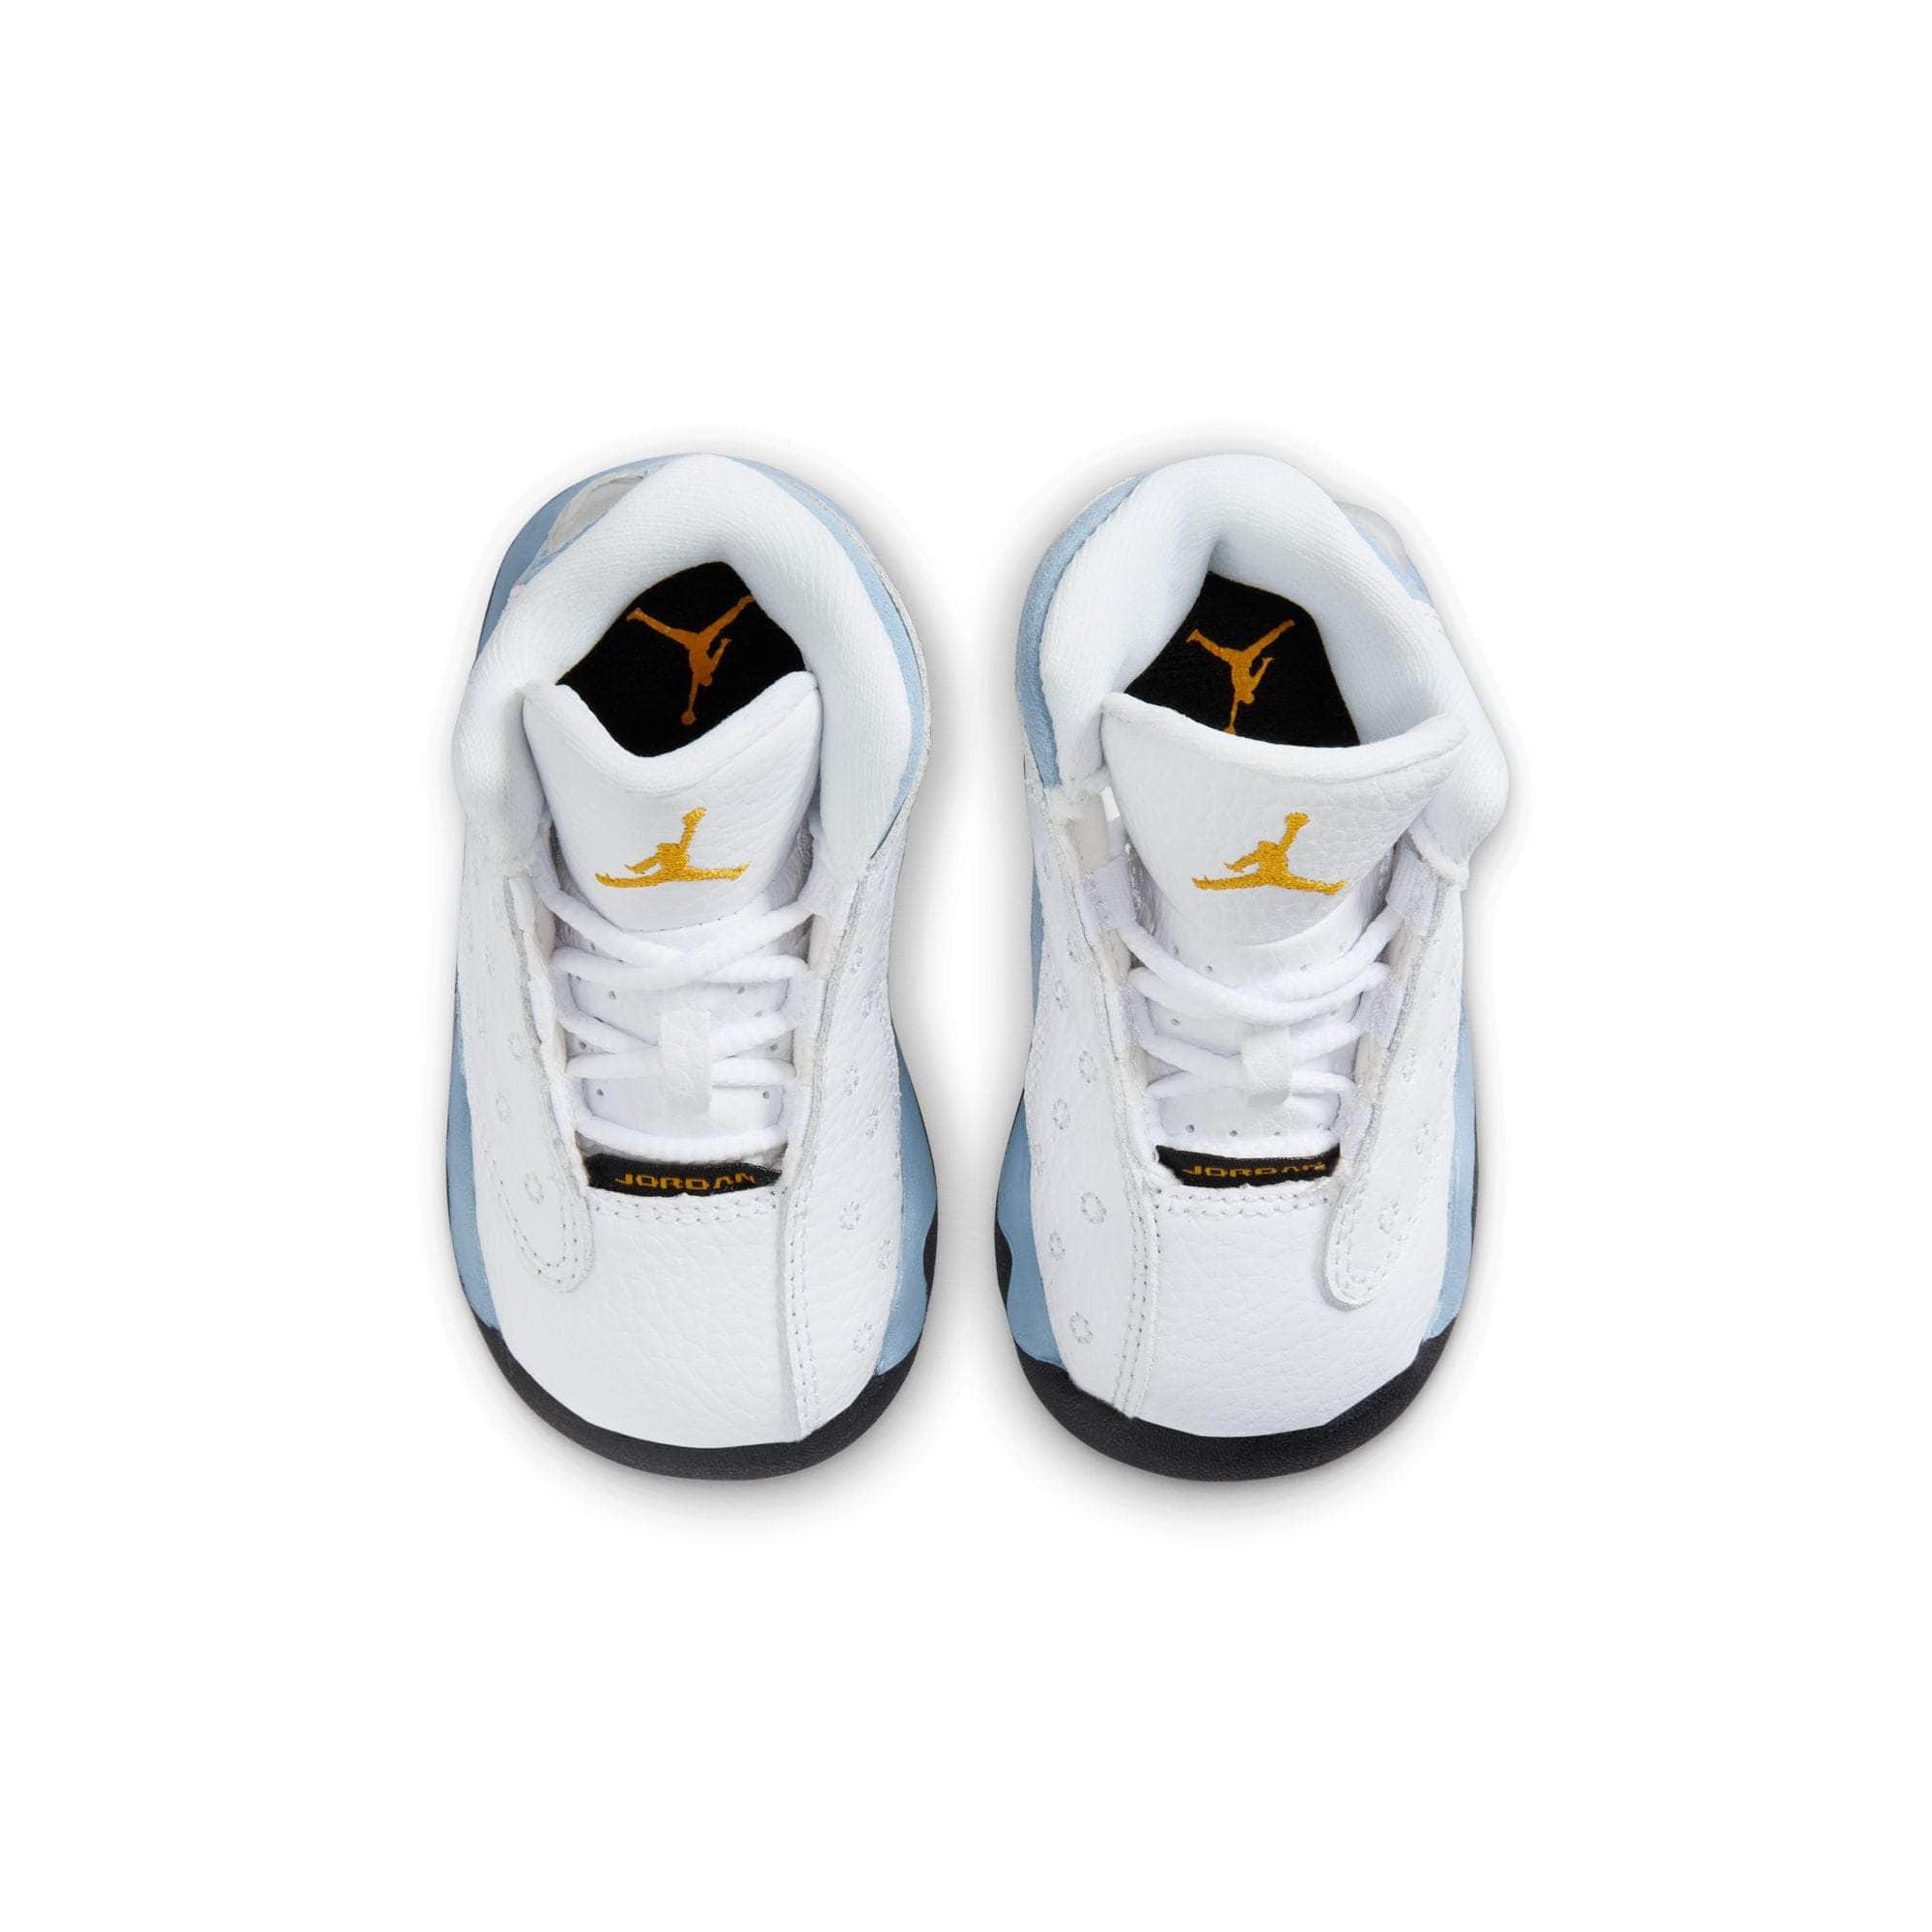 Air Jordan Footwear Air Jordan 13 “Blue Grey” - Toddler's TD